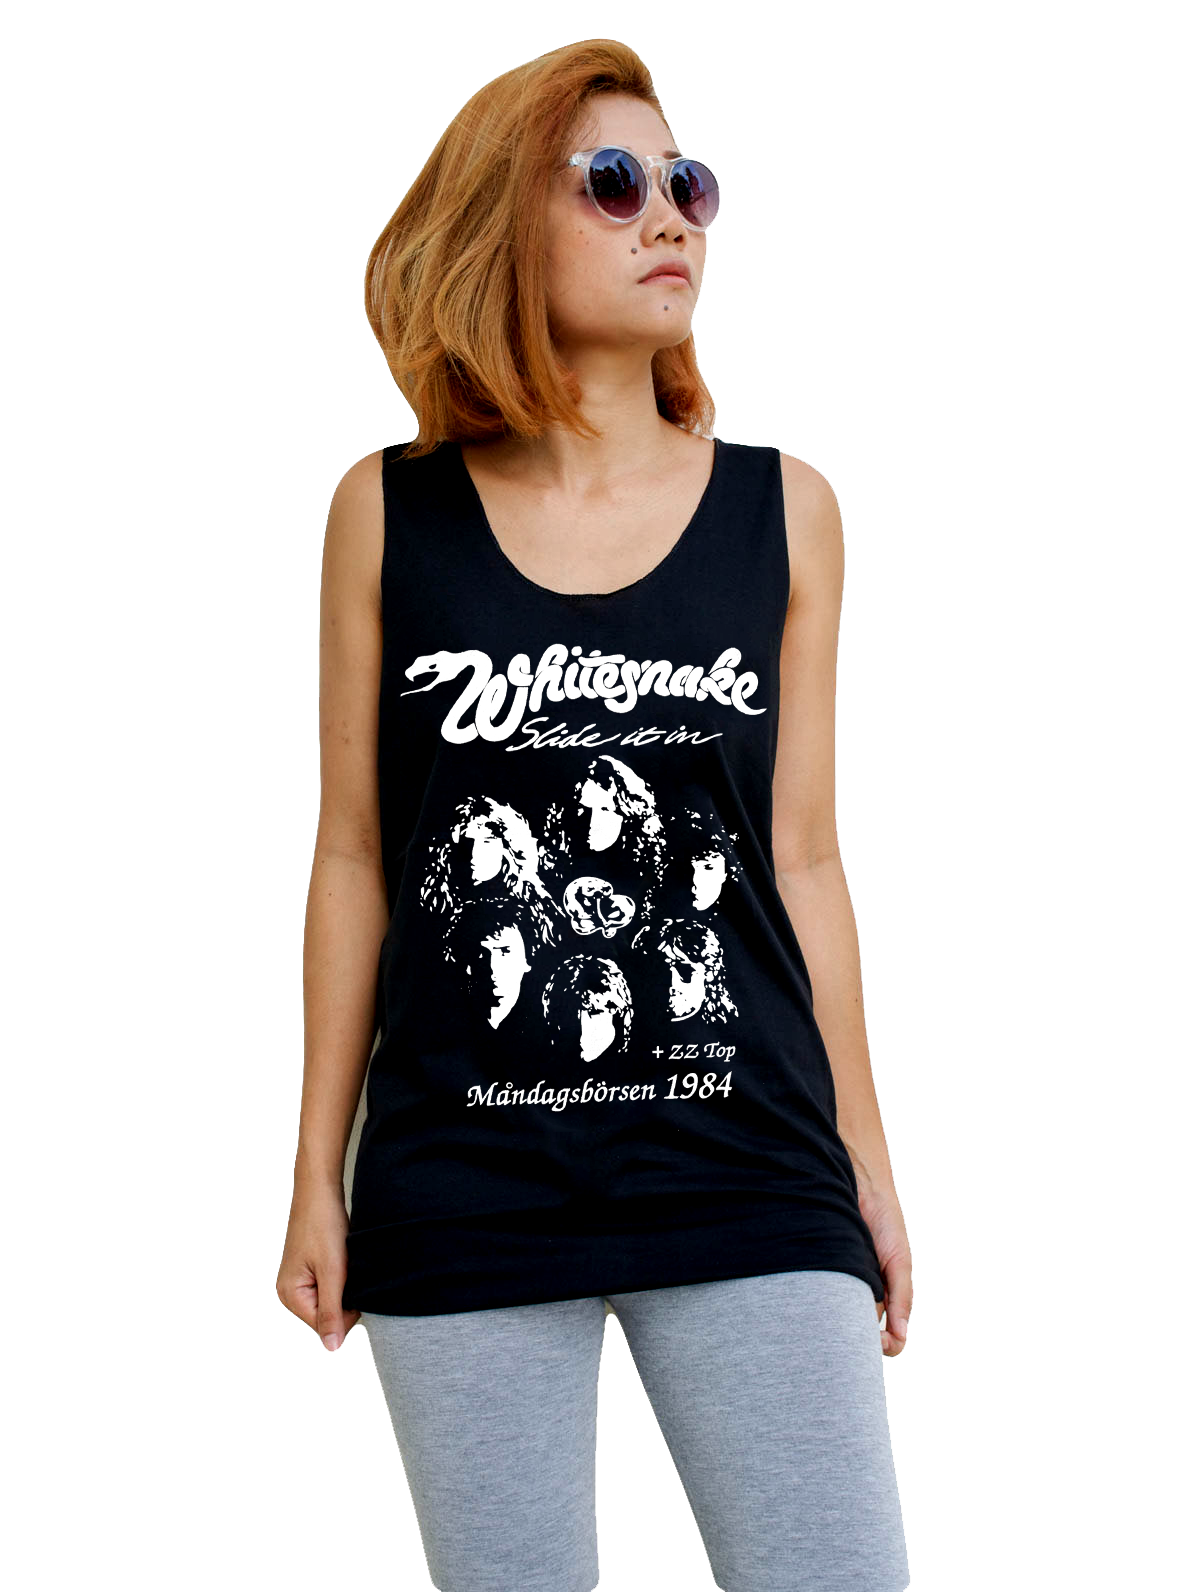 Unisex Whitesnake Tank-Top Singlet vest Sleeveless T-shirt